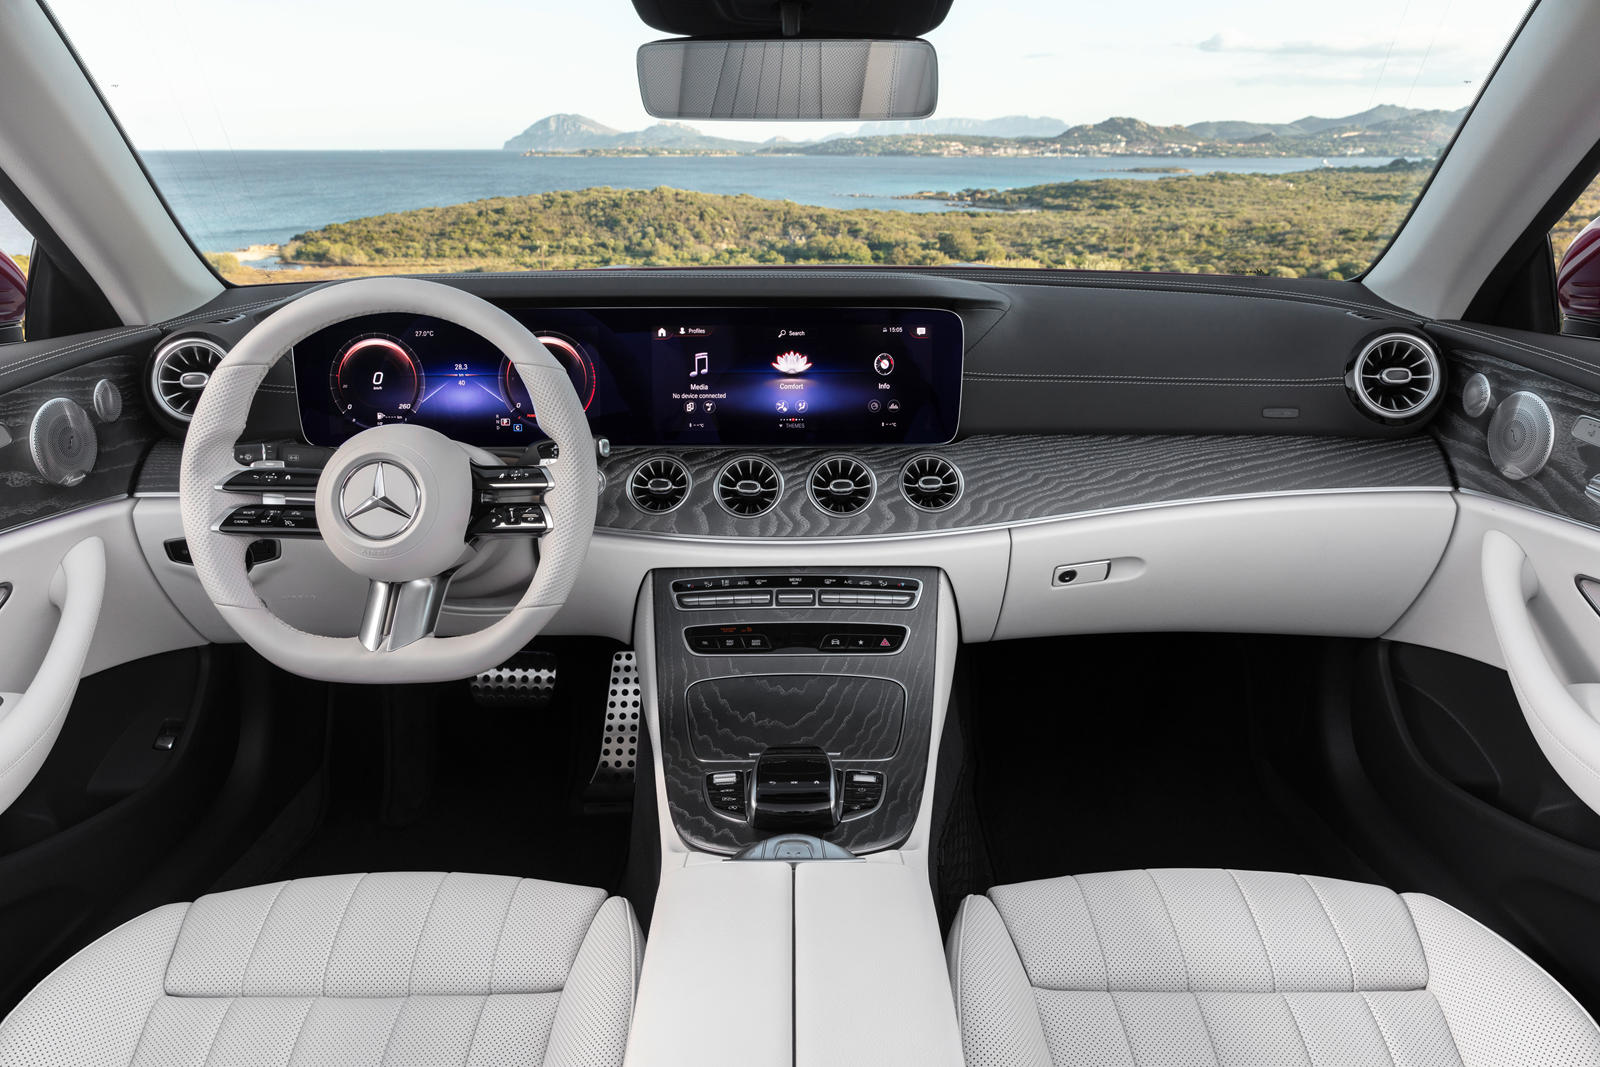 2021 Mercedes-Benz E-Class Convertible Central Console